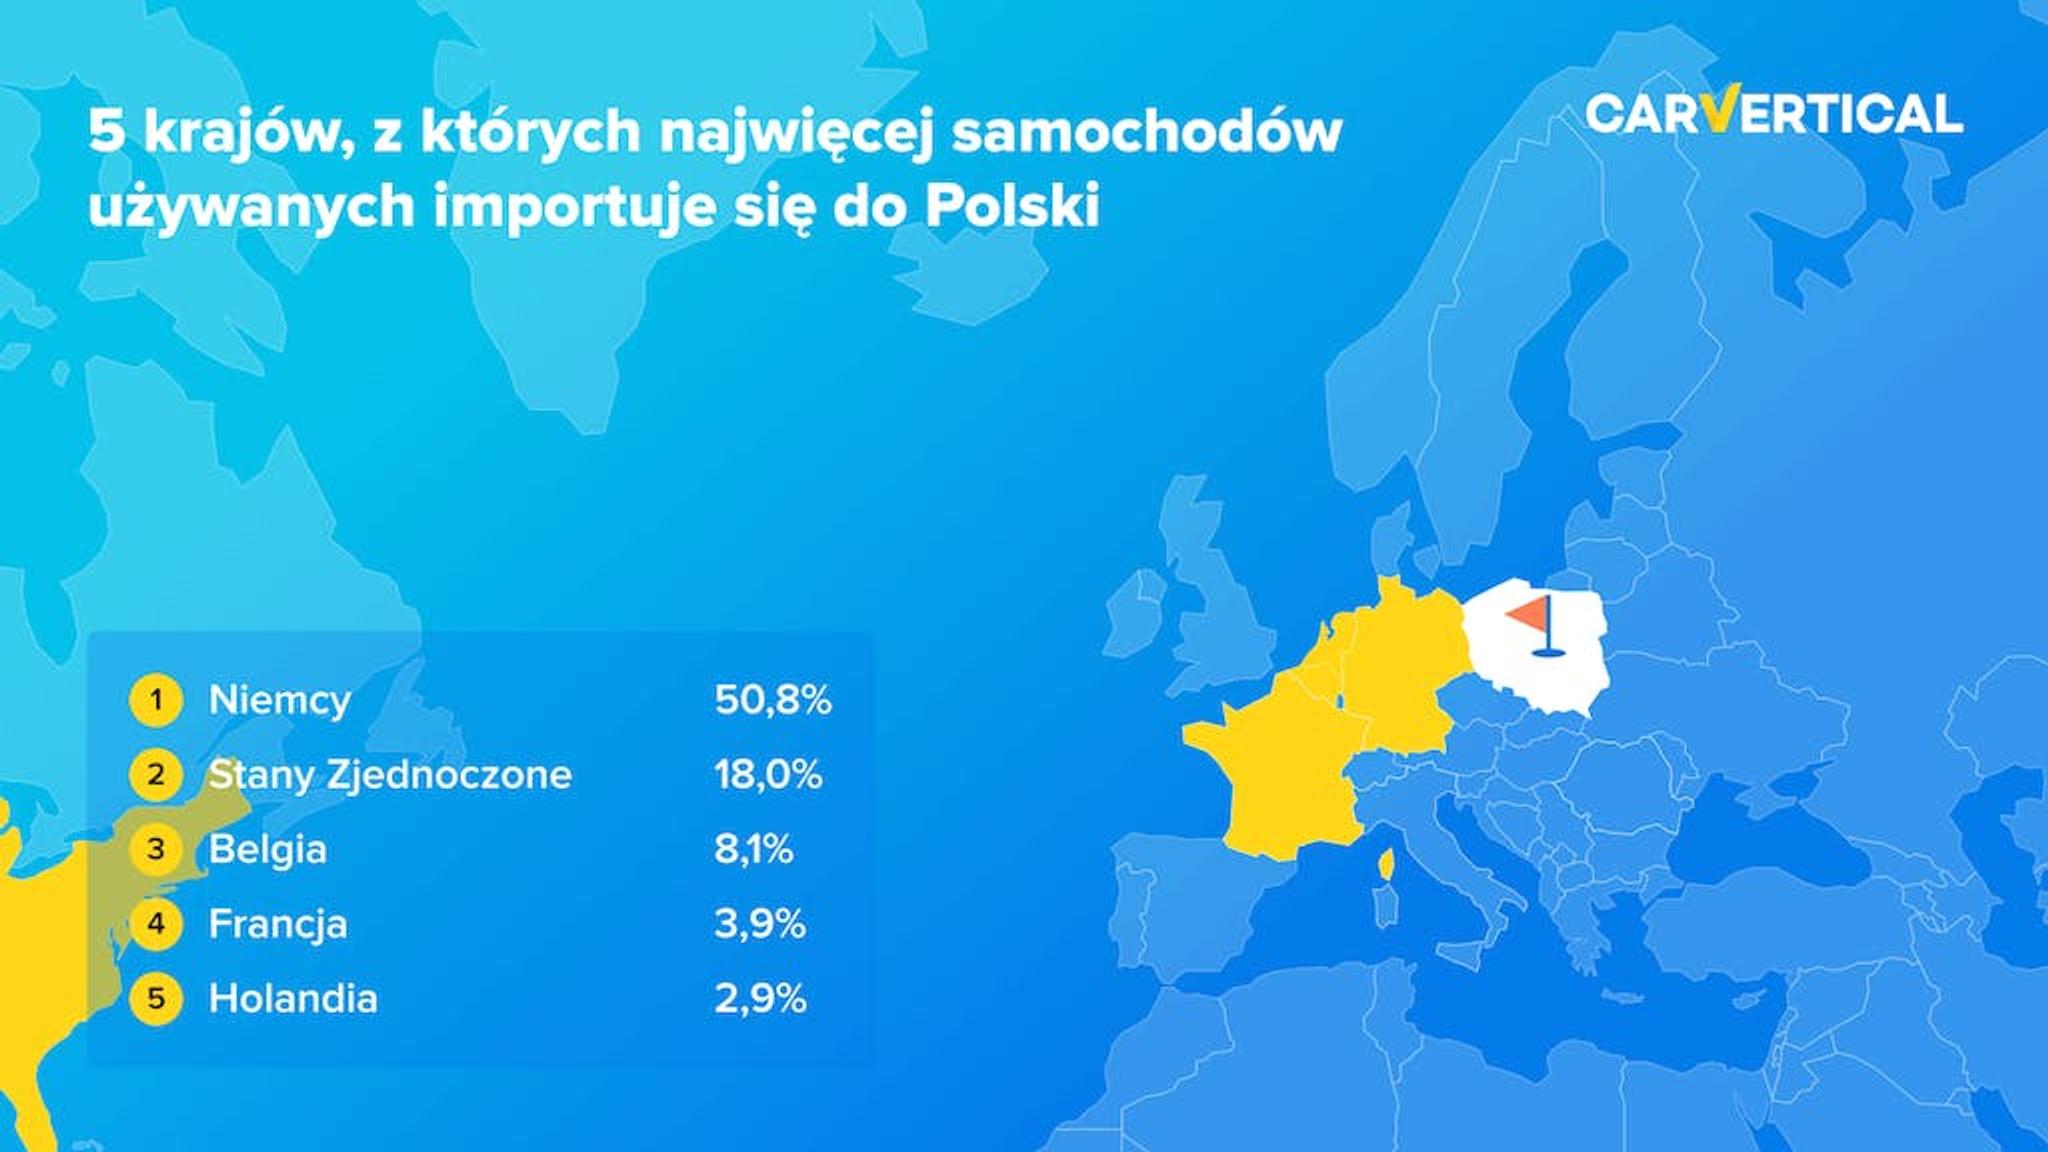 5 krajow, z ktorych najwiecej samochodow uzywanych importuje sie do Polski